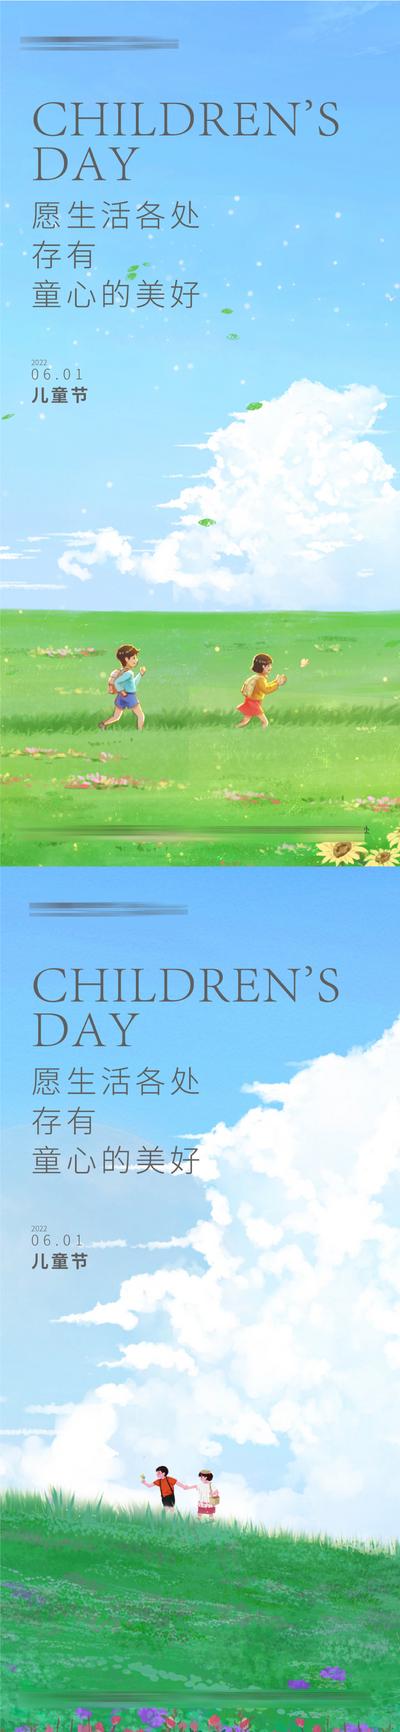 南门网 海报 公历节日 儿童节 孩子 自然 草地 手绘